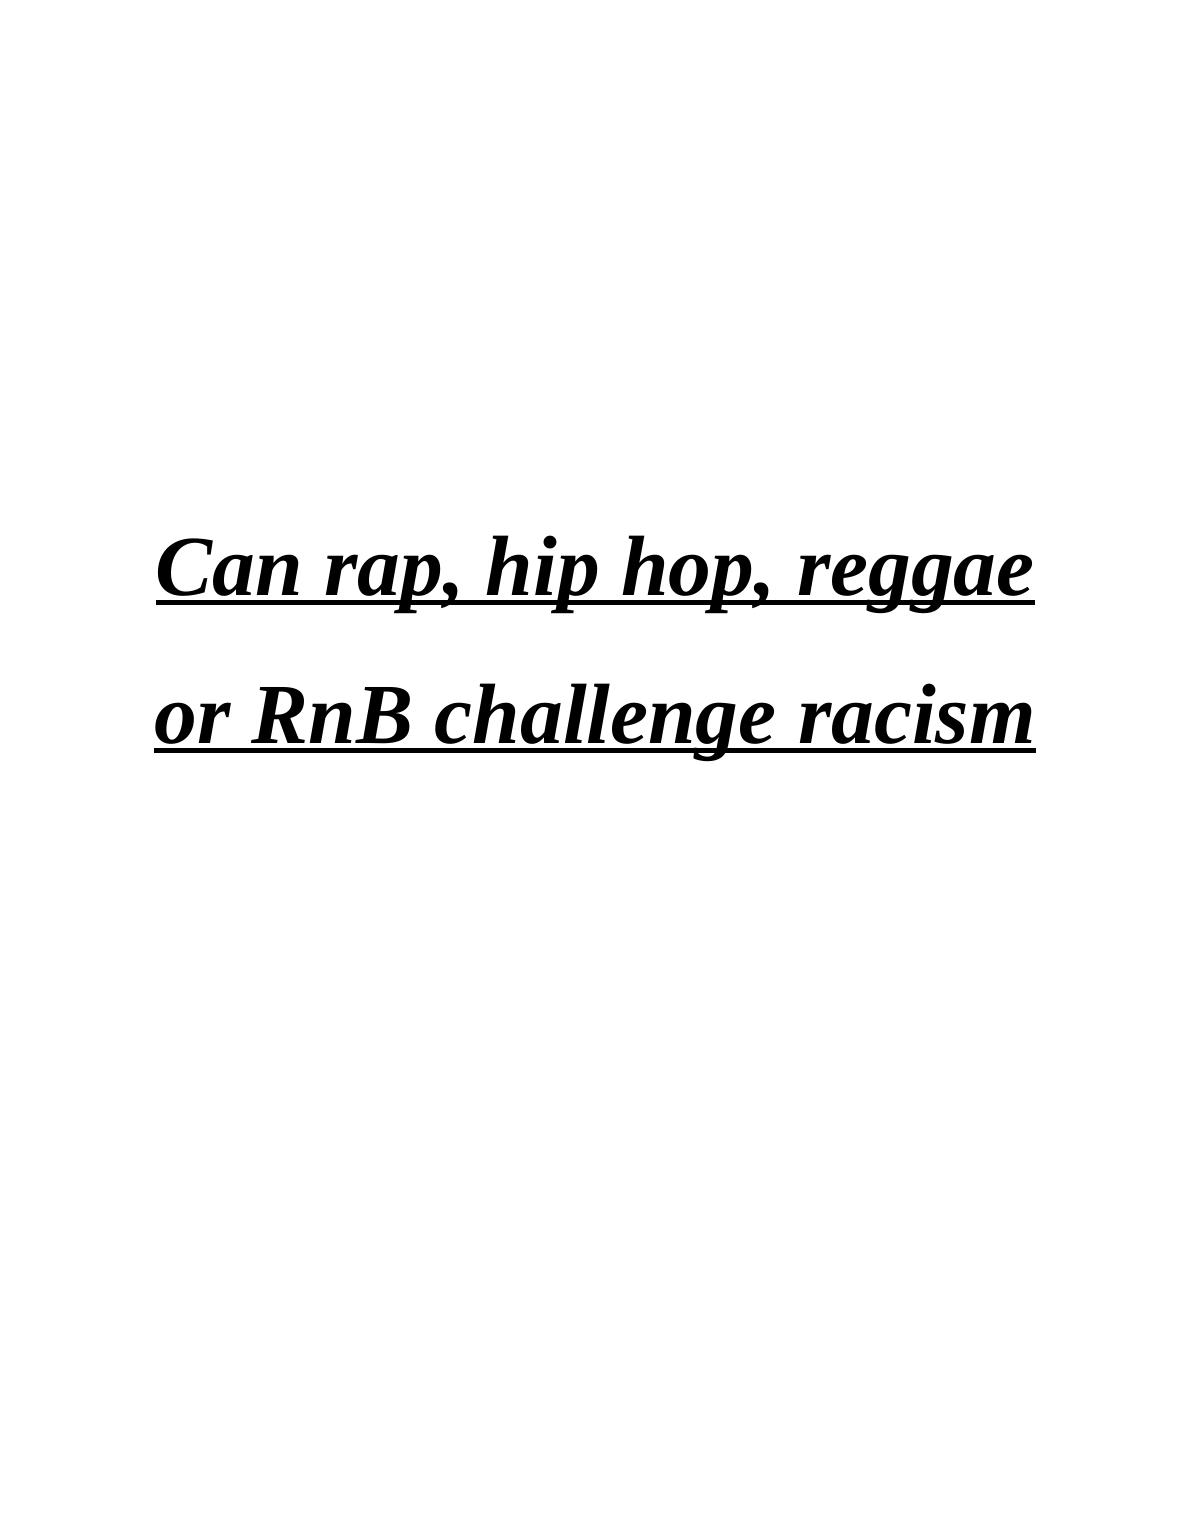 Can Rap, Hip Hop, Reggae or RnB Challenge Racism?_1